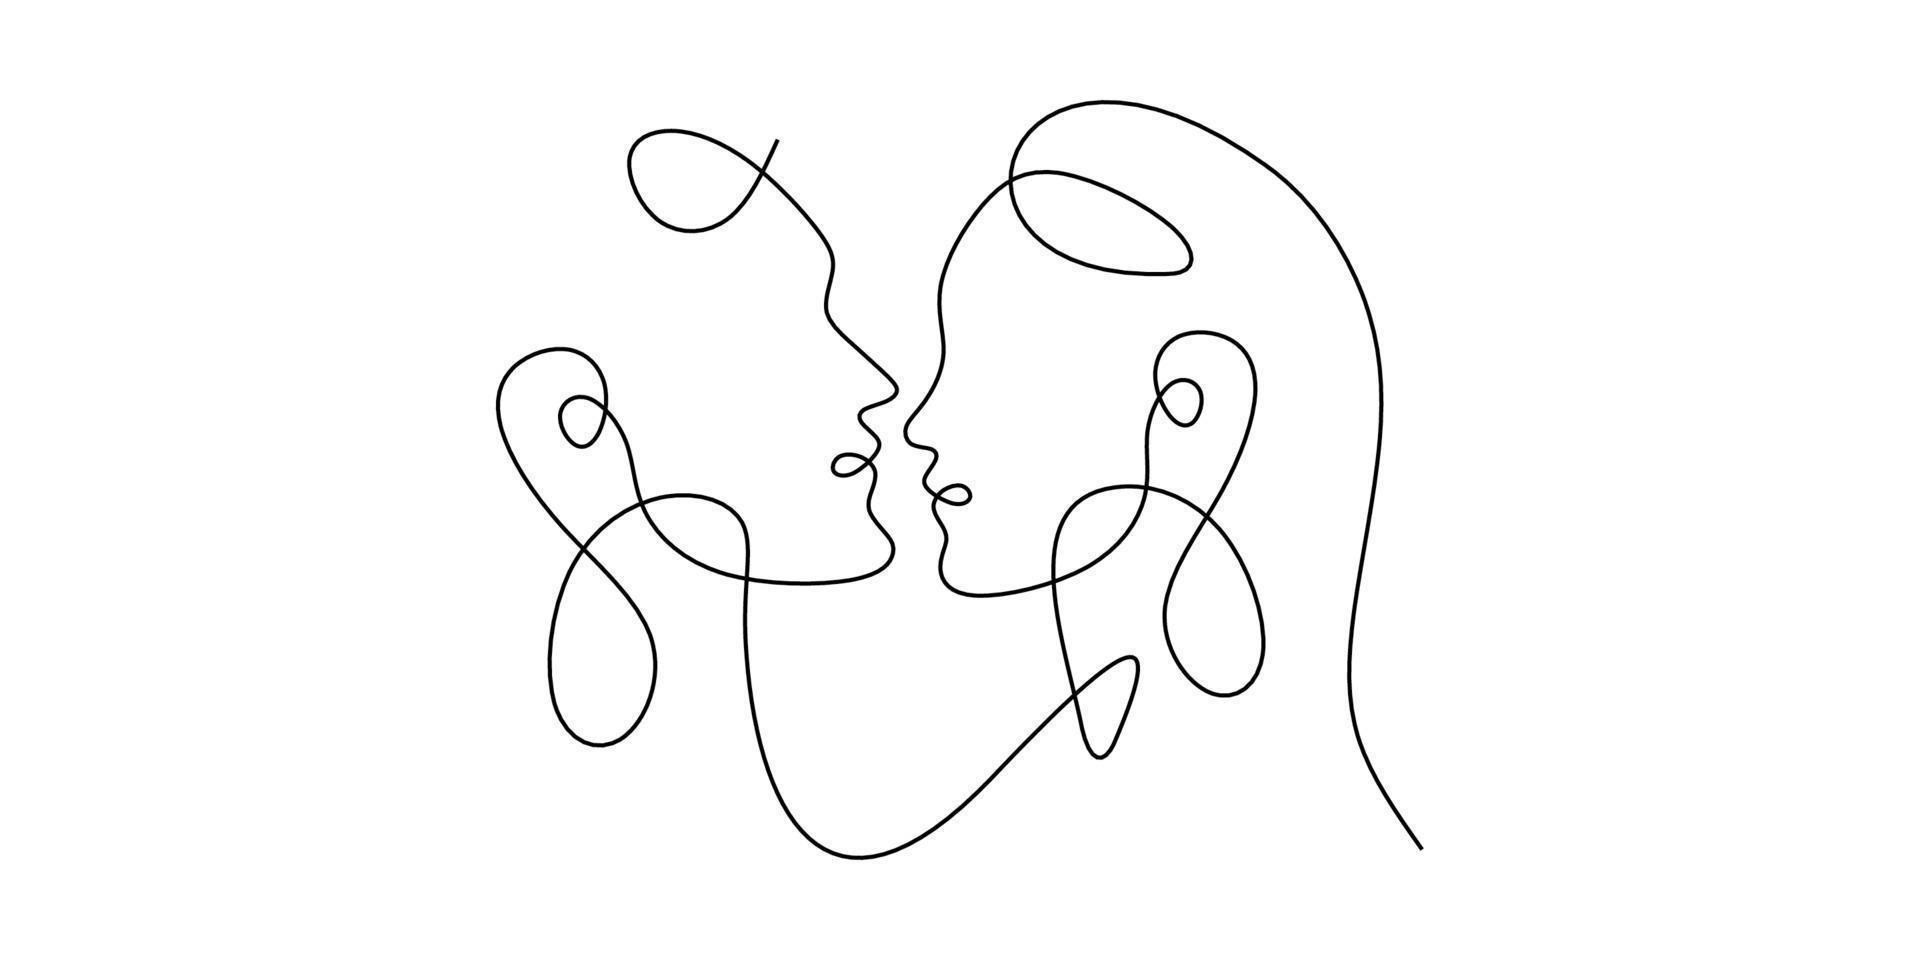 una singola linea tracciata continua che bacia amore, coppia, bacio, uomo, donna, amante, viso. immagine isolata contorno disegnato a mano sfondo bianco. vettore